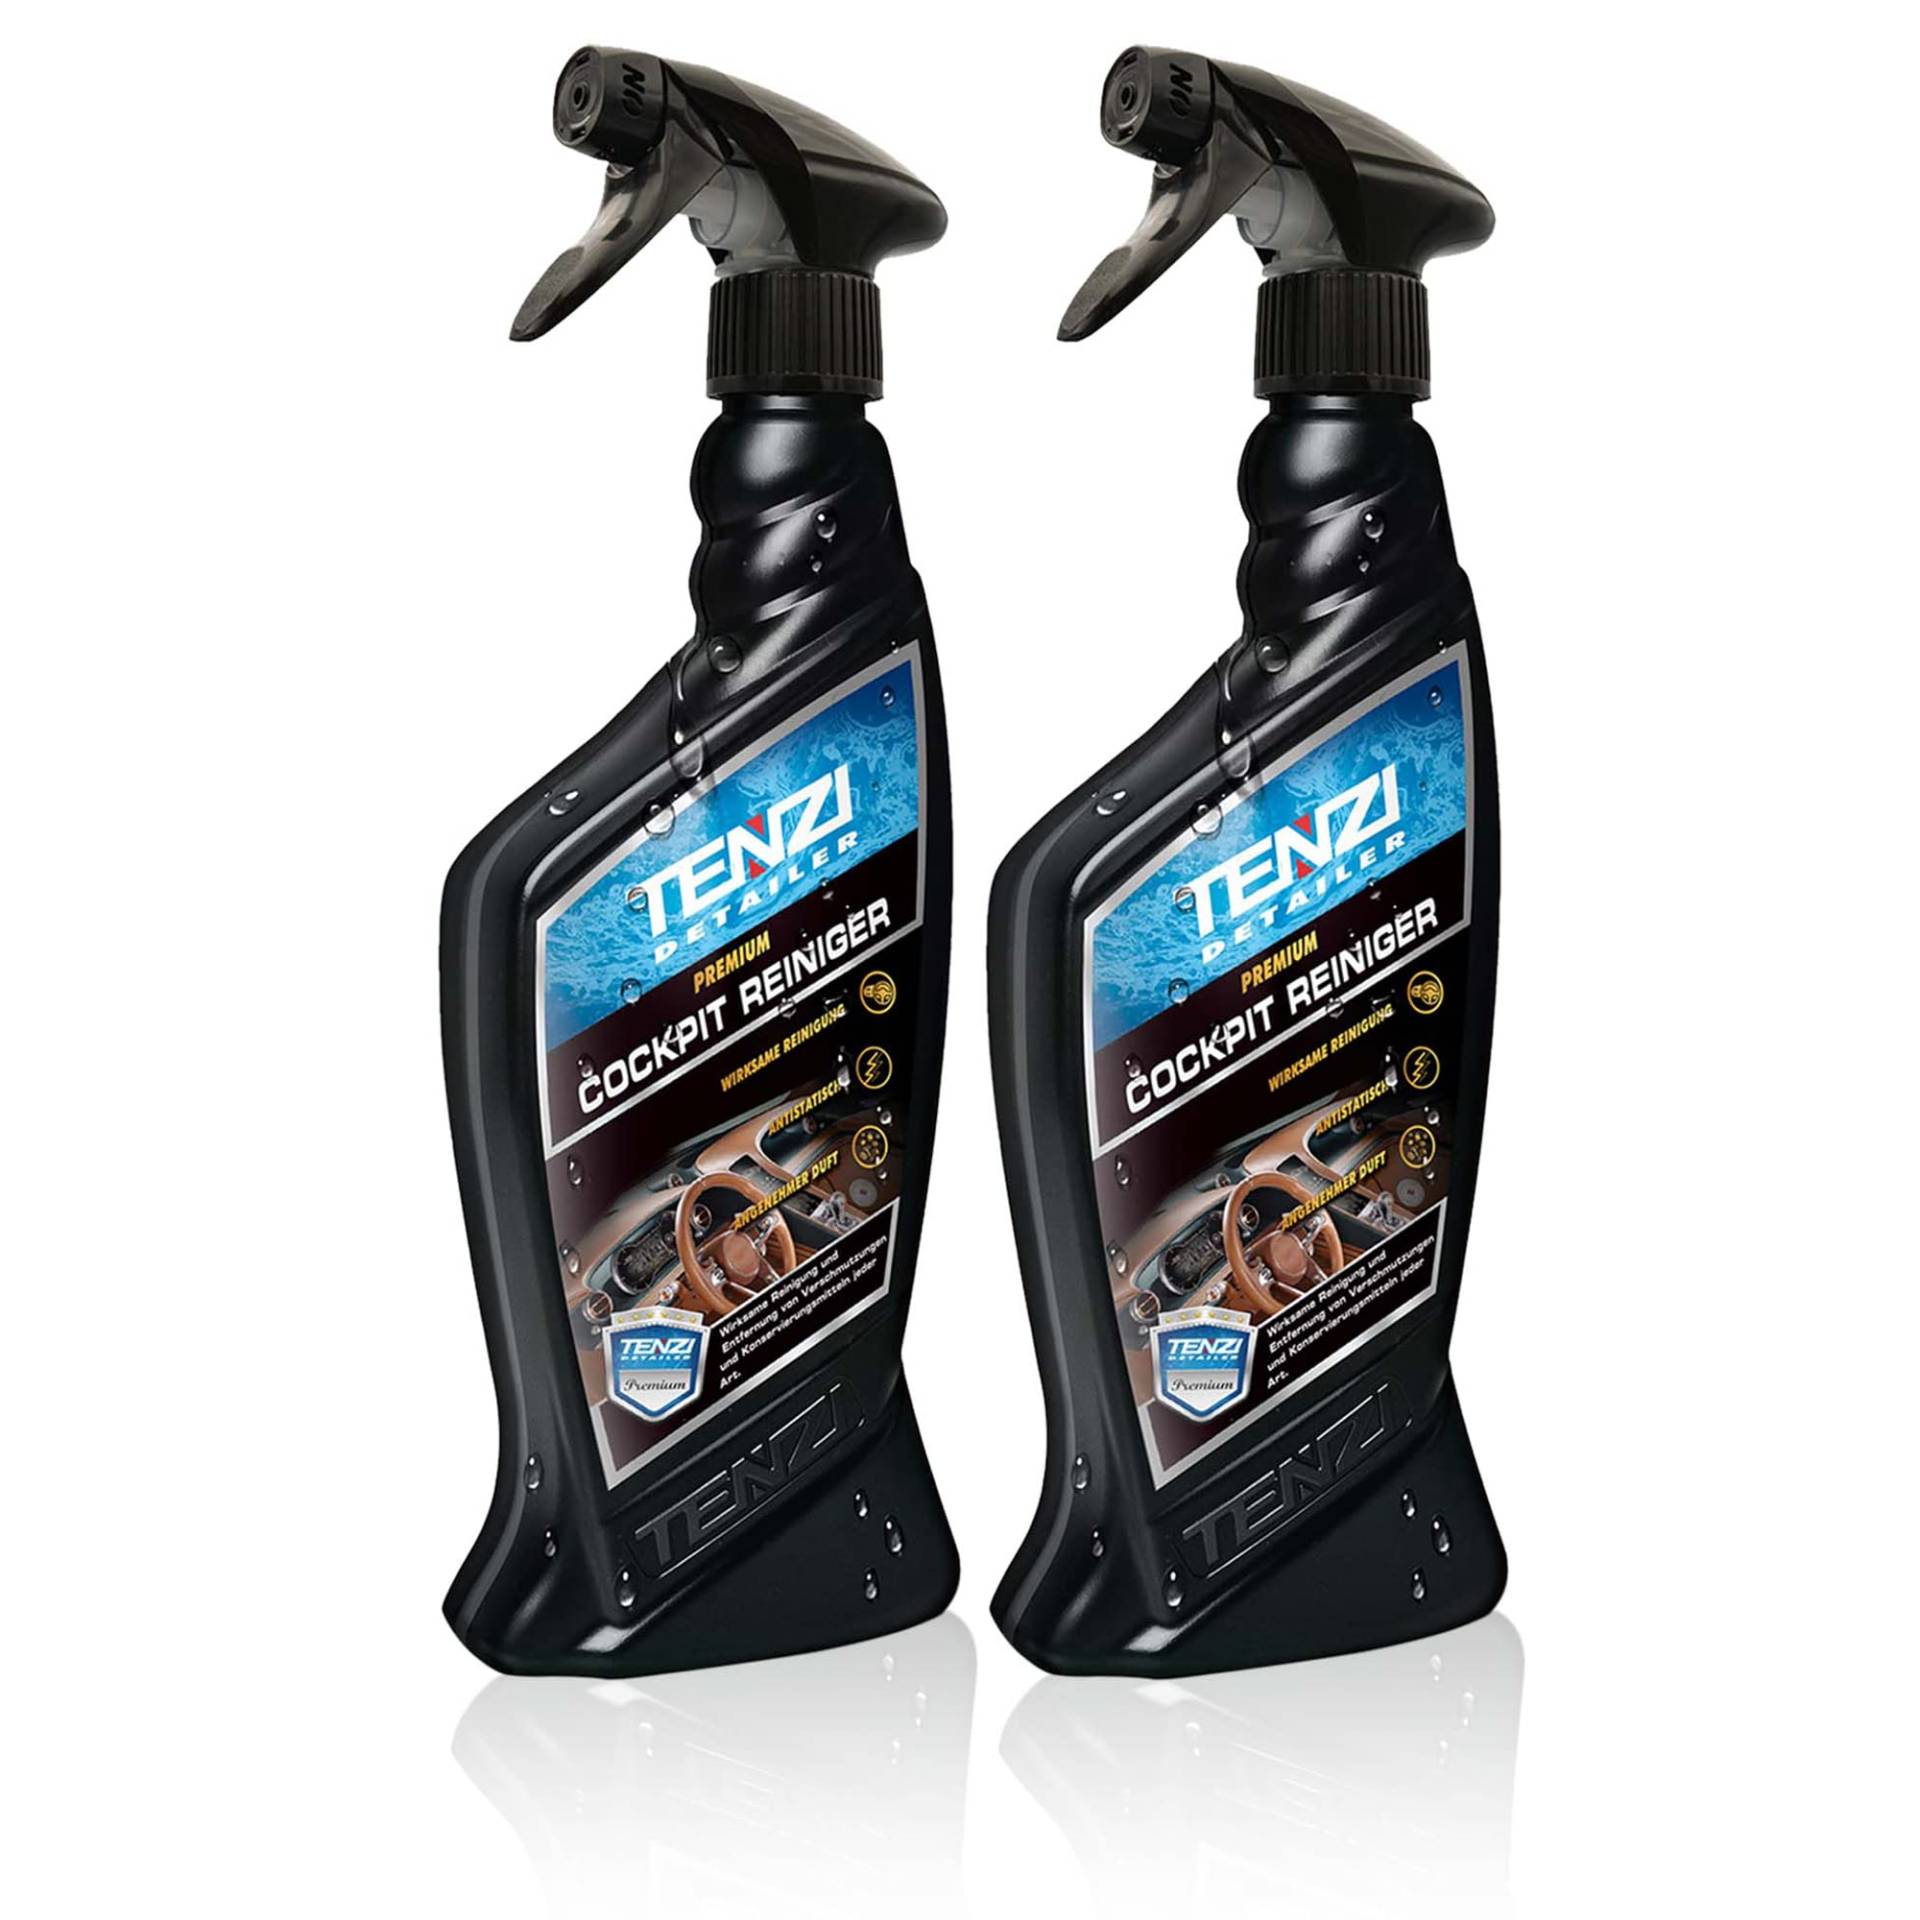 TENZI 2X Premium Cockpitreiniger (600ml) für Auto & Motorrad - Innenraumreiniger, antistatisch Effekt, angenehmer Duft, aufsprühen & abwischen - Autopflege, Kunststoffpflege, Reinigung Interior innen von TENZI